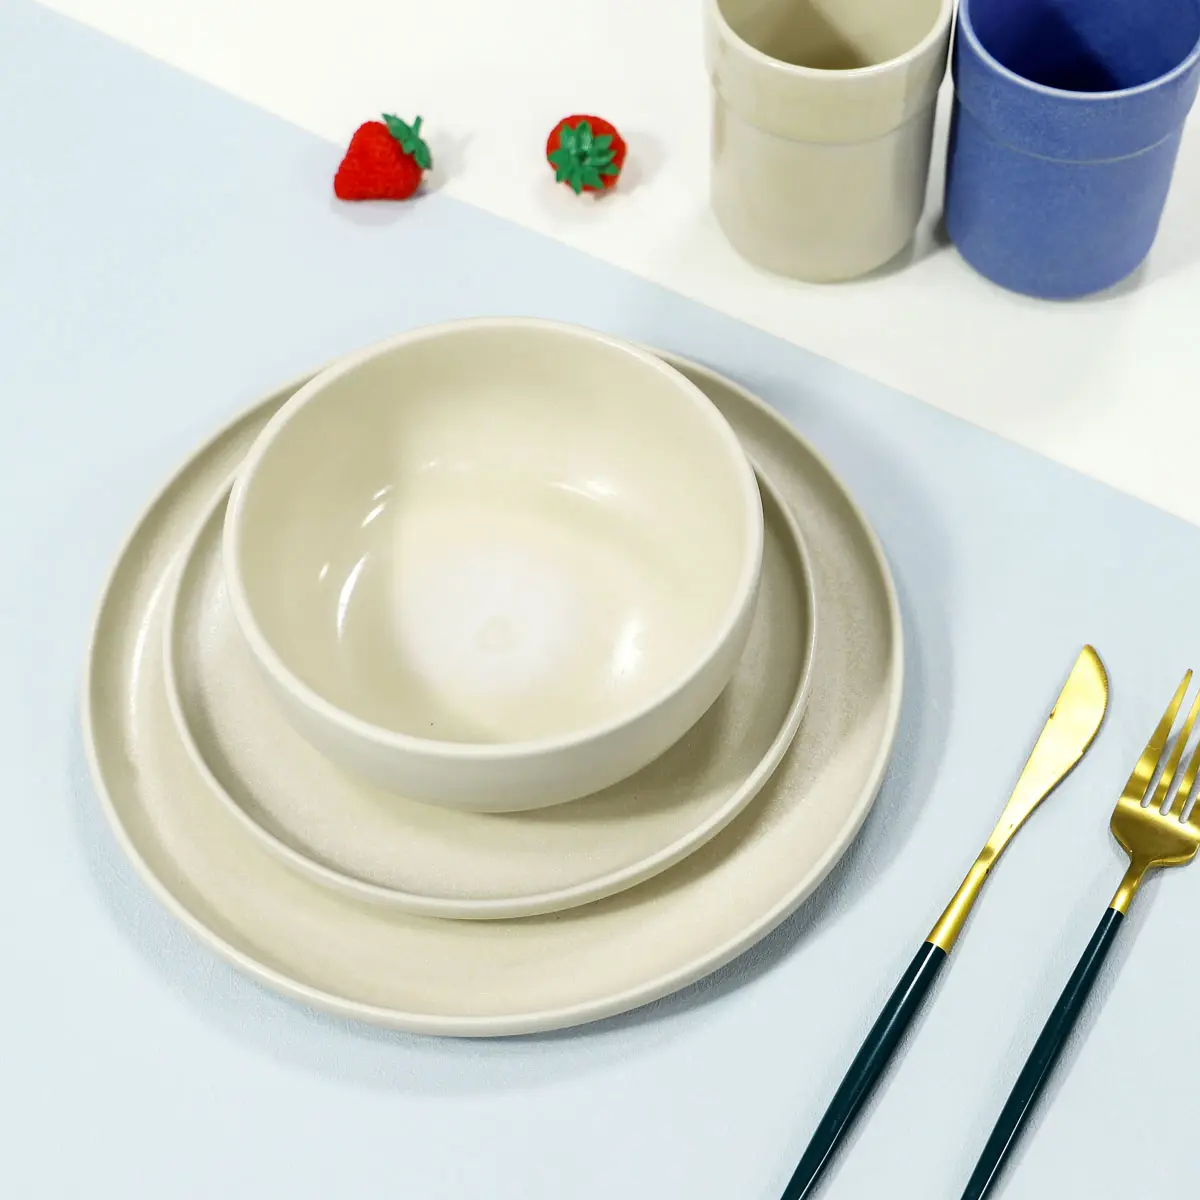 YBH hotel matte reactive glaze stoneware dinnerware klein blue ceramic plates sets dinnerware tableware